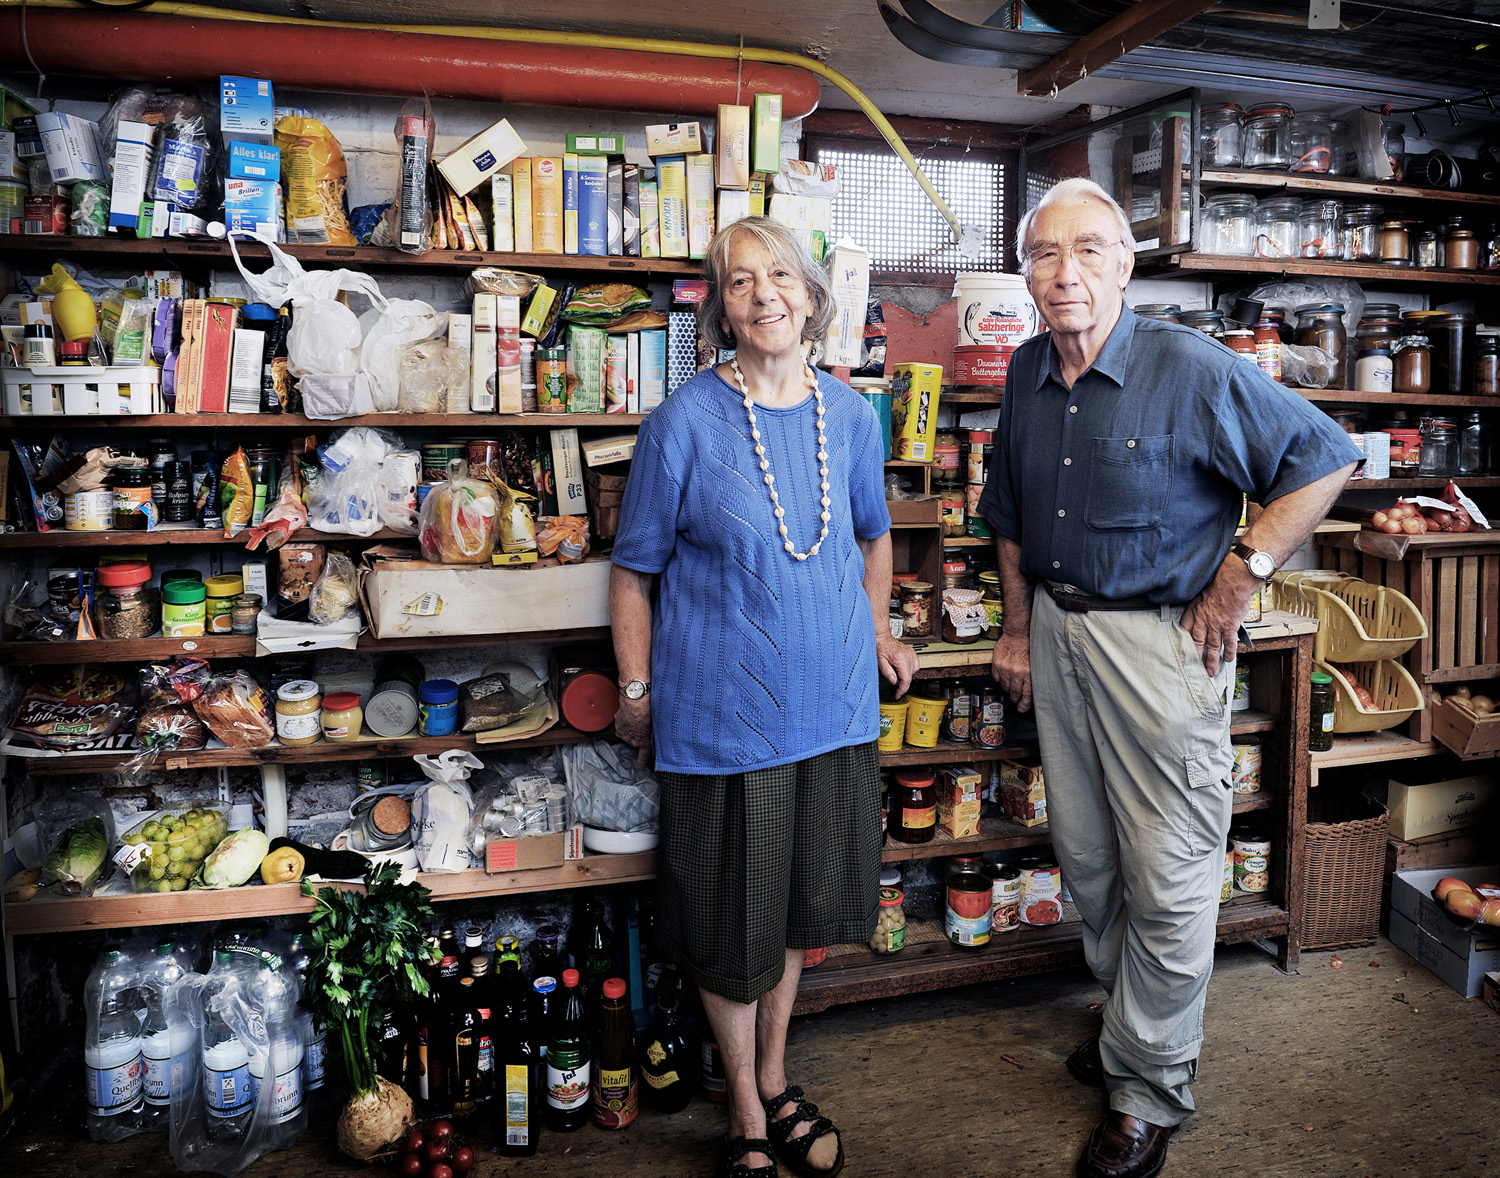 Zwei ältere Menschen stehen vor einem grossen Regal, in dem Nahrungsvorräte gelagert sind.